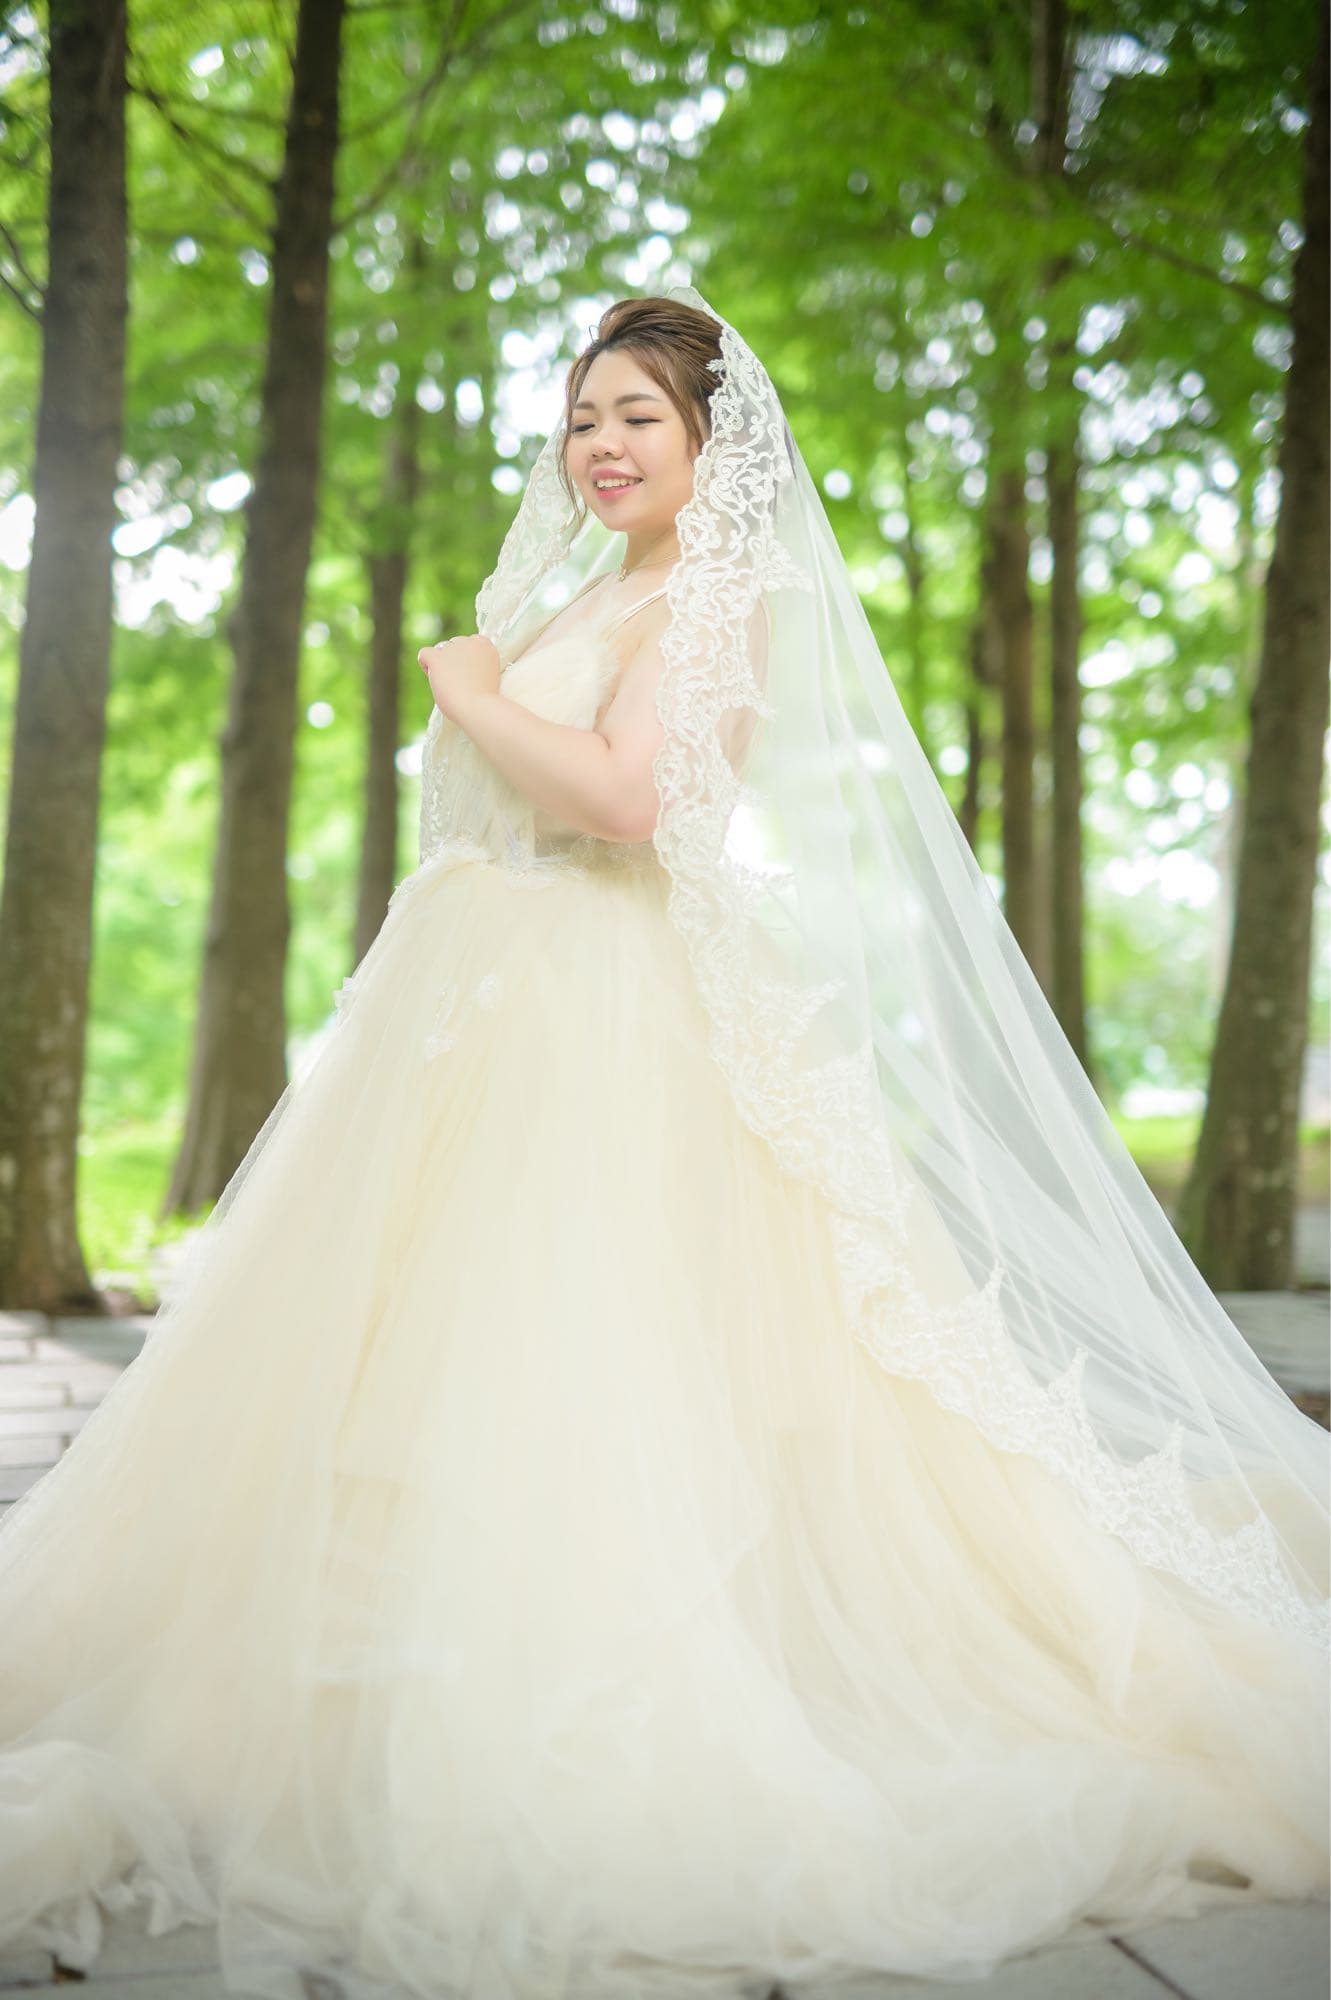 #婚紗 胖胖新娘婚紗照分享 ️ - 結婚板 | Dcard